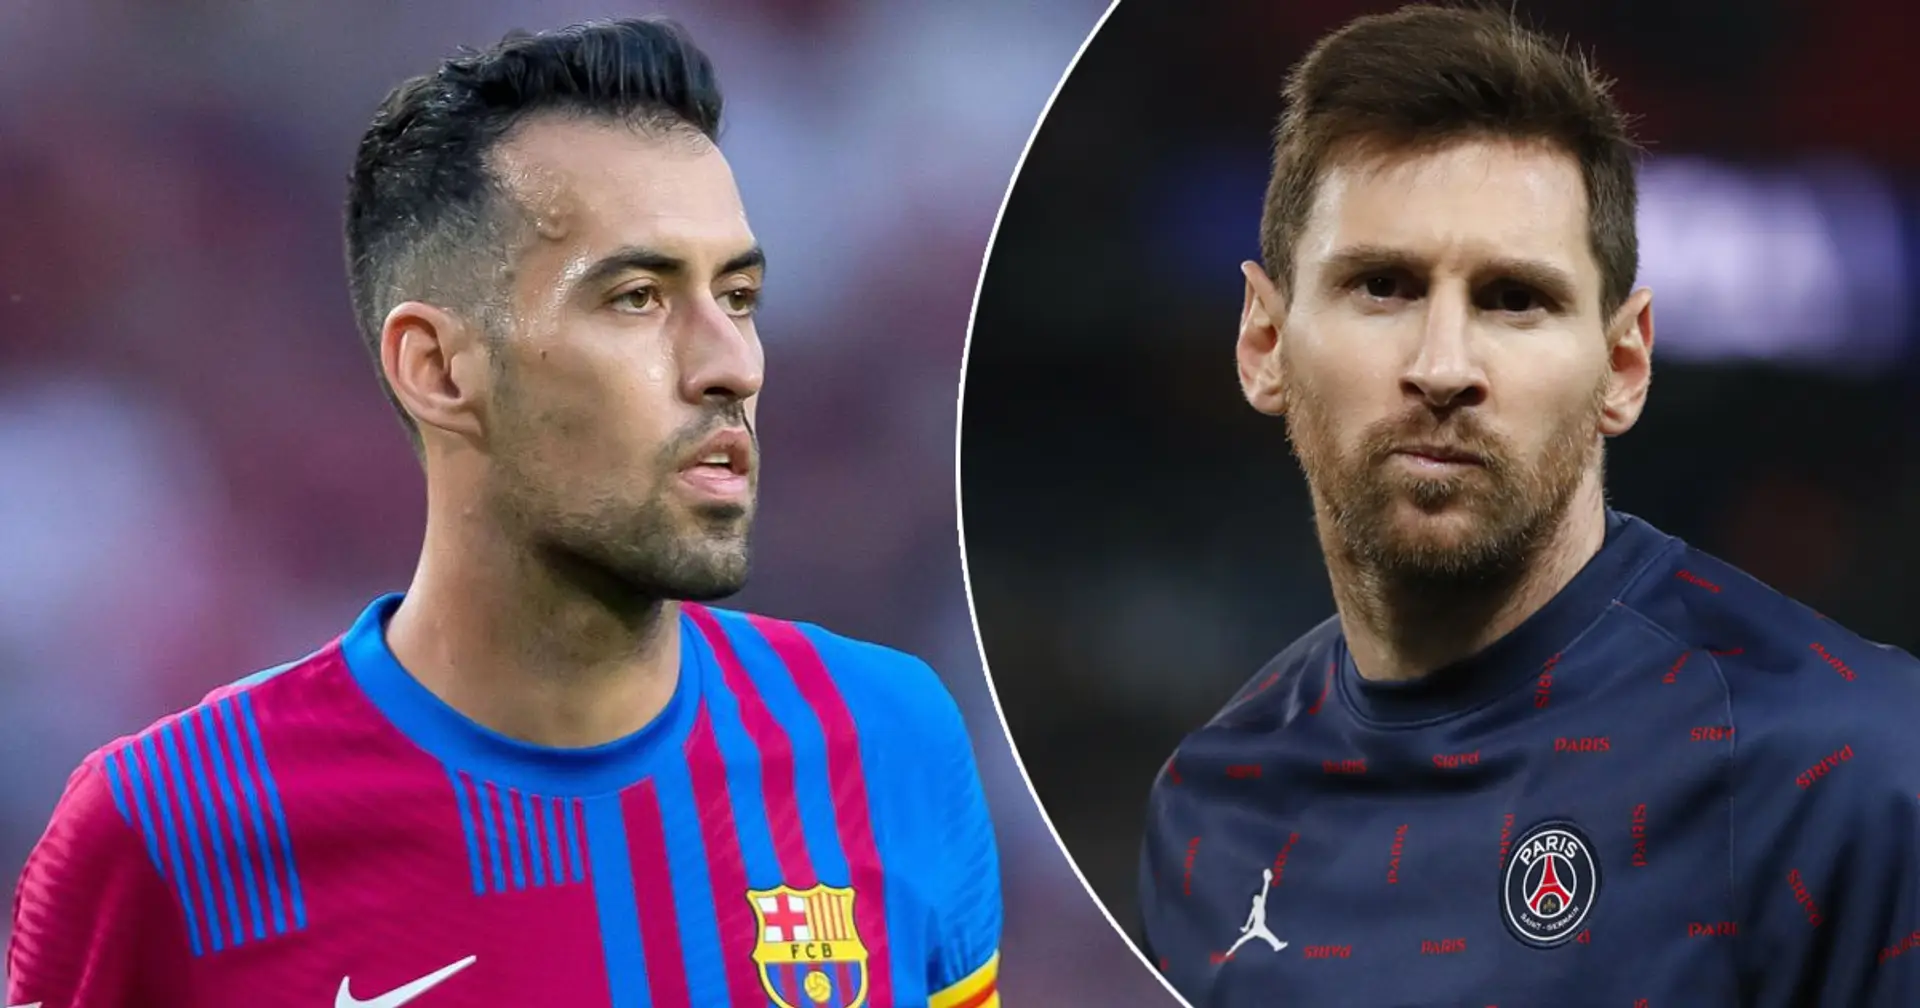 Busquets planea dejar el Barça en 2023, podría reencontrarse con Messi (fiabilidad: 5 estrellas)